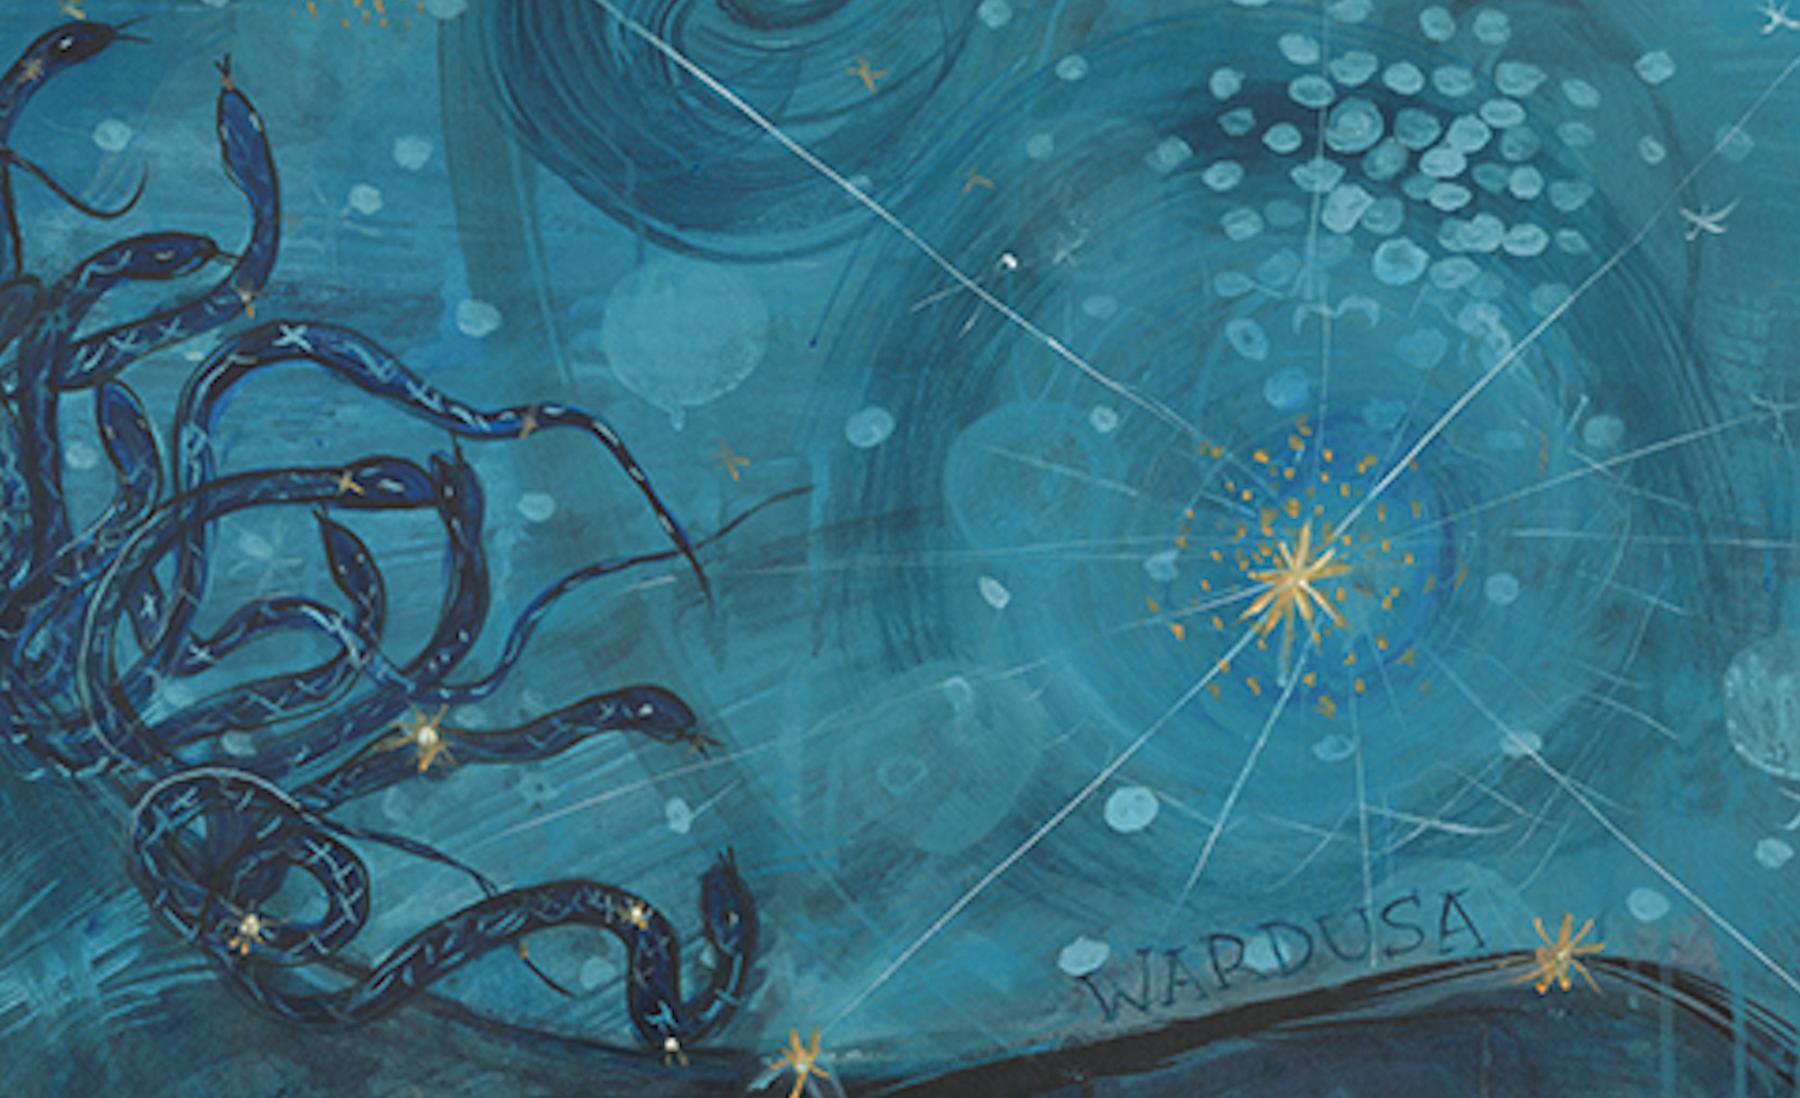 Großes mythisches Pferdegemälde im Celestial-Stil  Acryl Gouache-Tinte auf Leinwand Blau (Abstrakter Expressionismus), Painting, von Alex K. Mason